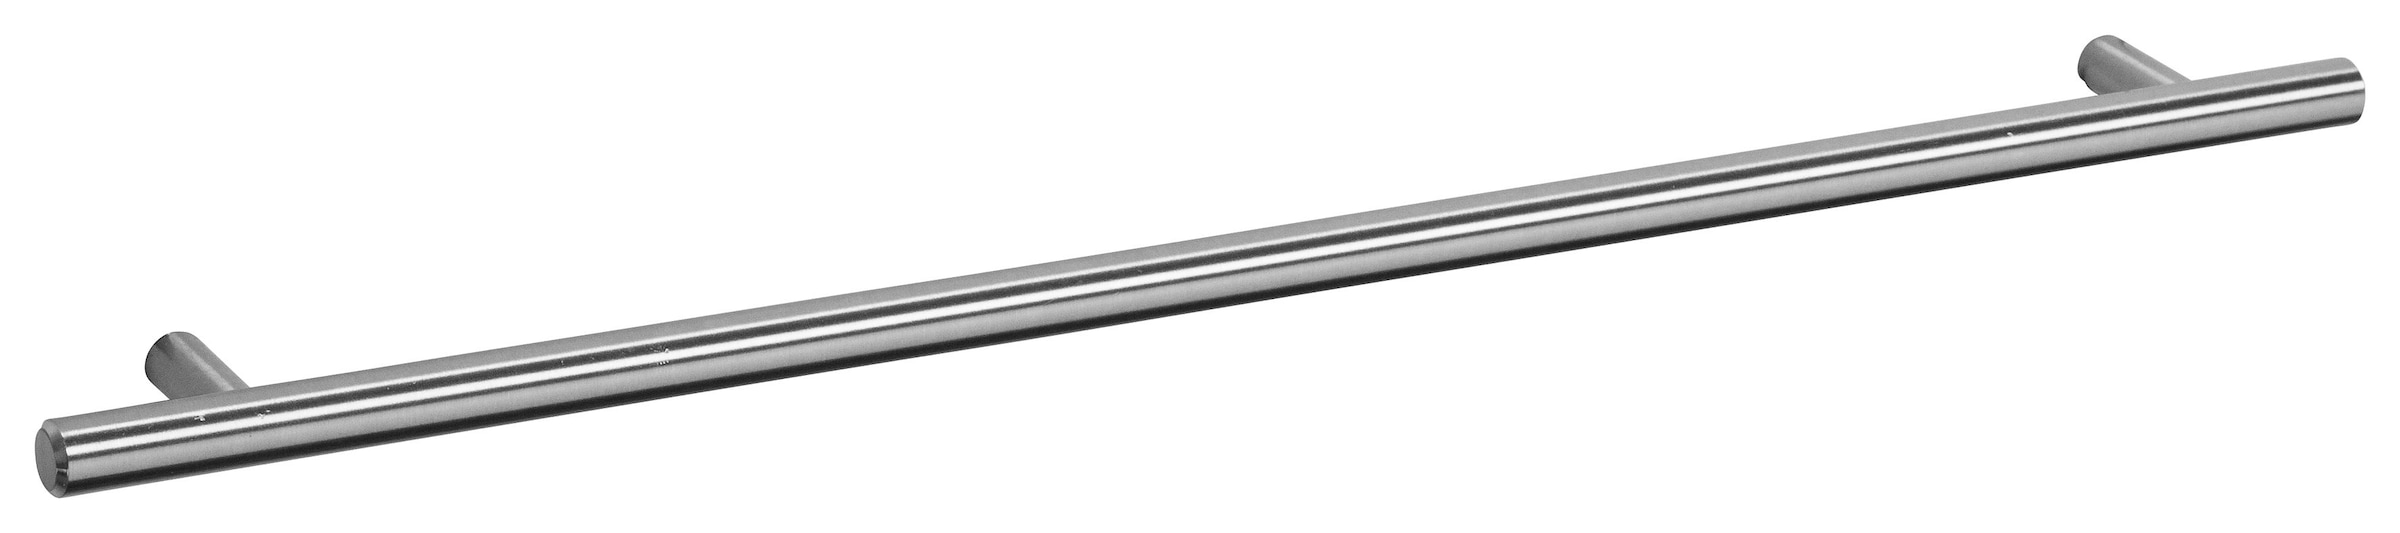 OPTIFIT Spülenschrank »Bern«, 100 cm breit, mit 2 Türen, höhenverstellbare Füsse, mit Metallgriffen